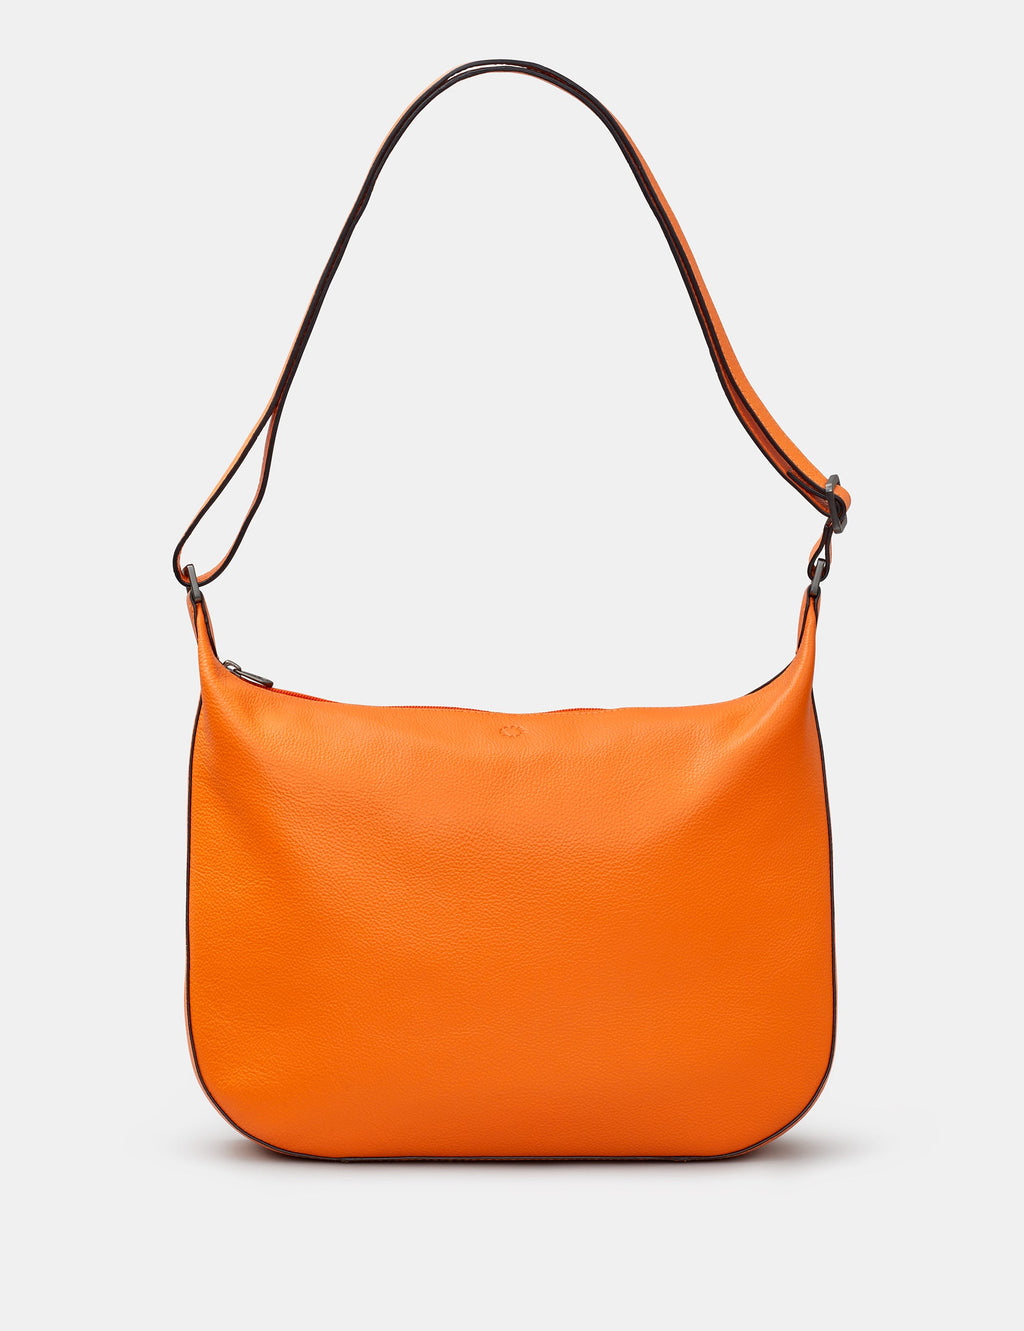 Dolton Leather Hobo Bag - SALE